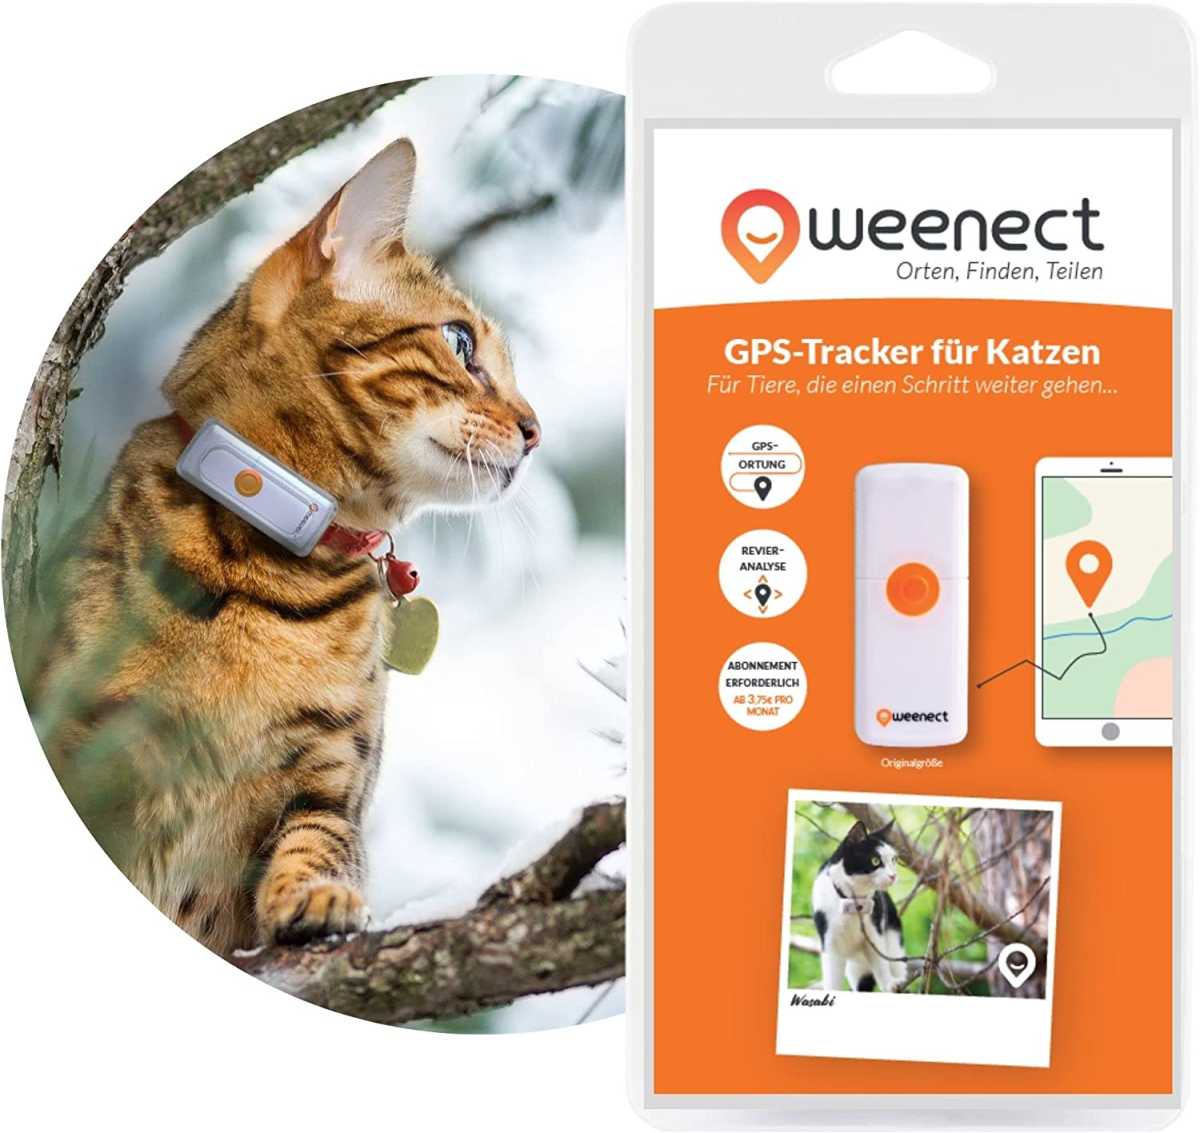 GPS-Tracker für Katzen – Weenect